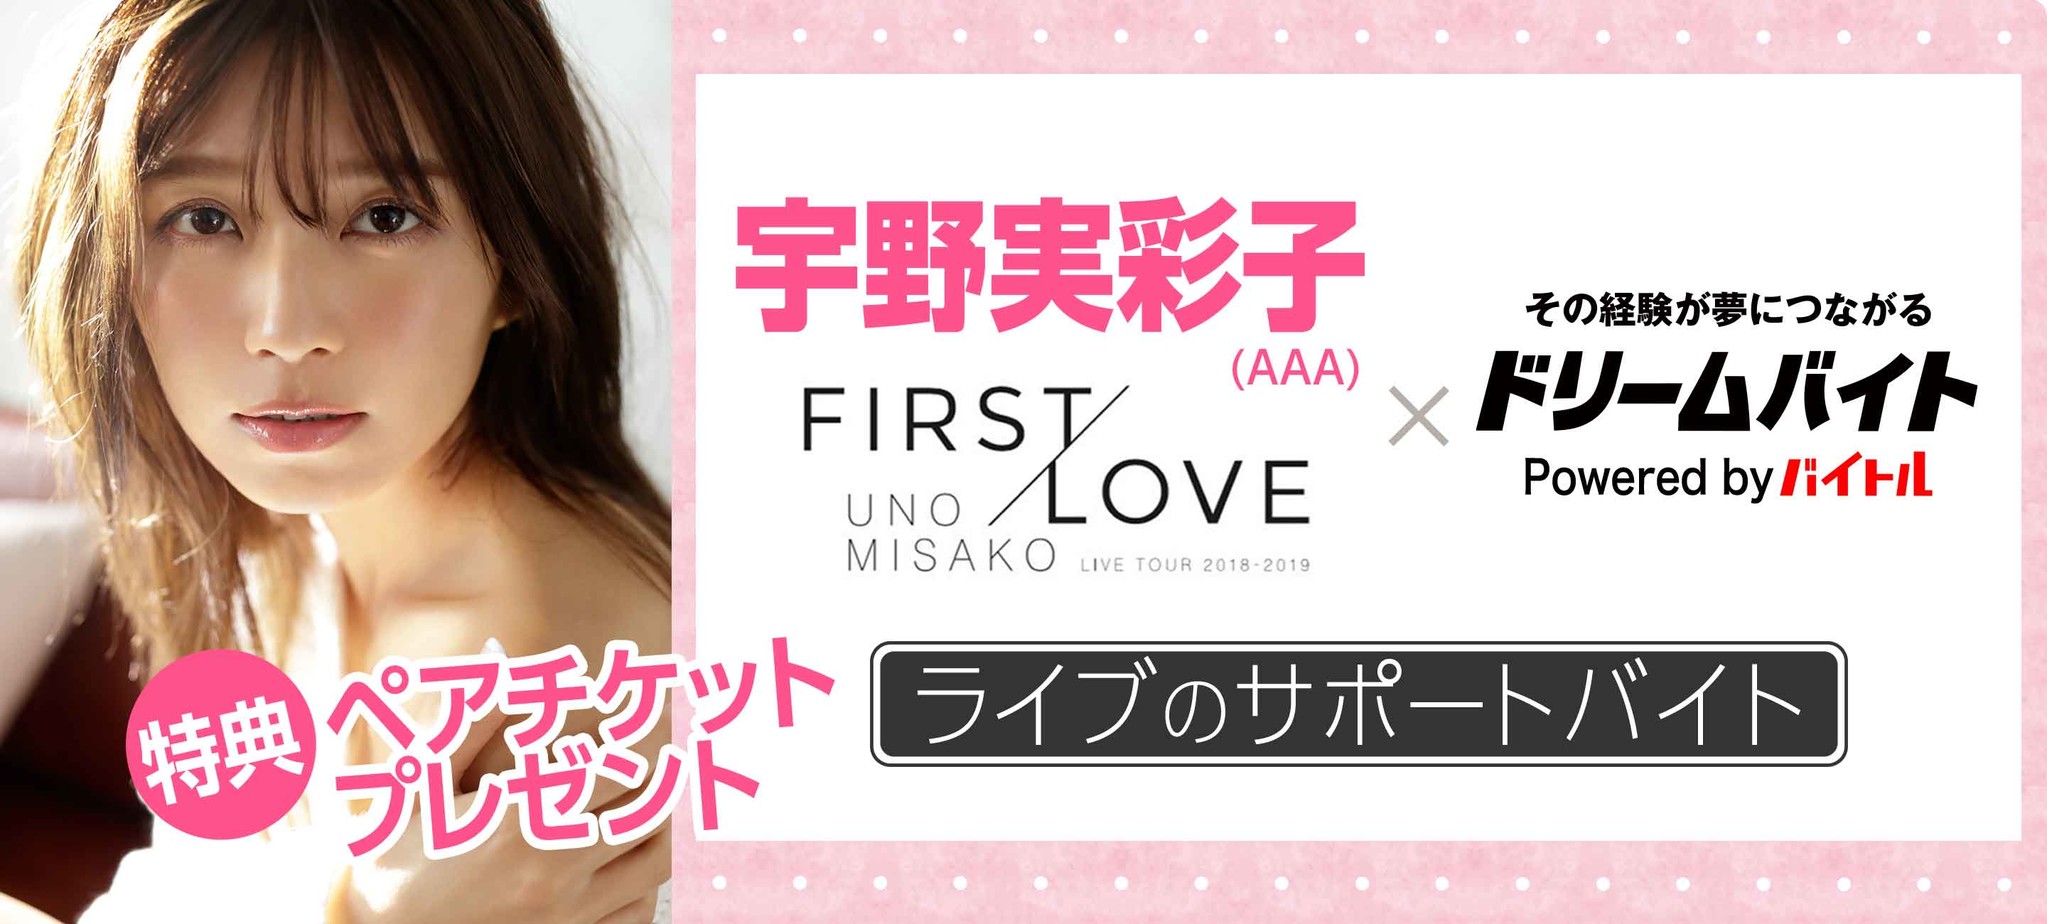 aメンバー 宇野実彩子の初ソロツアー Uno Misako Live Tour 18 19 First Love を間近でサポートできるアルバイトを大募集 ディップのプレスリリース